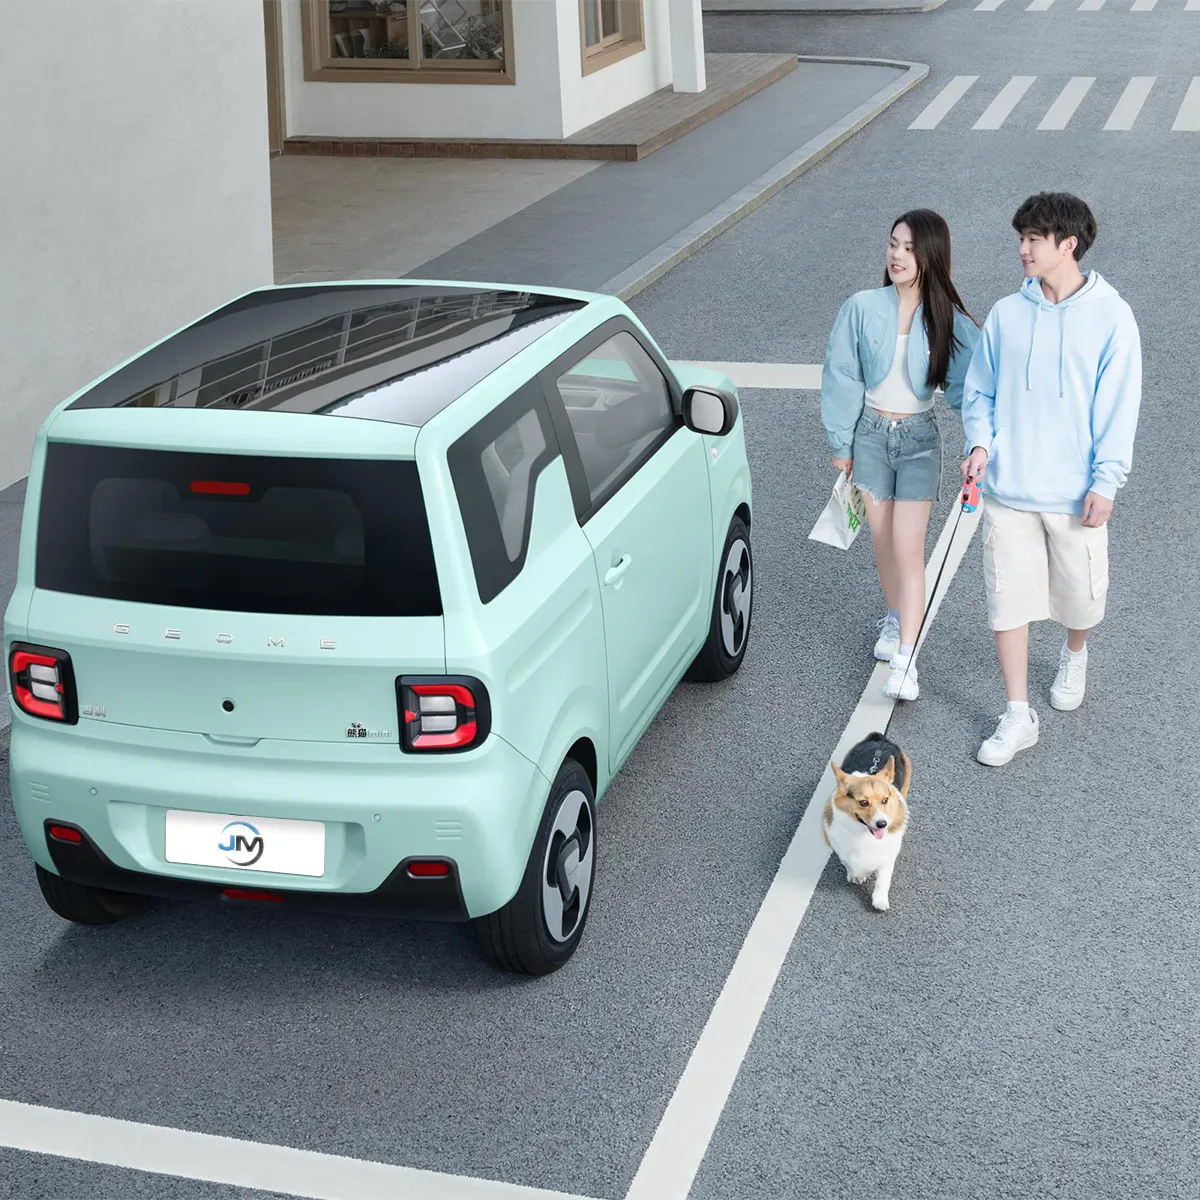 Geely Panda Mini Ev araba sevimli ayı kızlar için ikinci el araba ihracat yeni enerji araçlar akıllı elektrikli araba